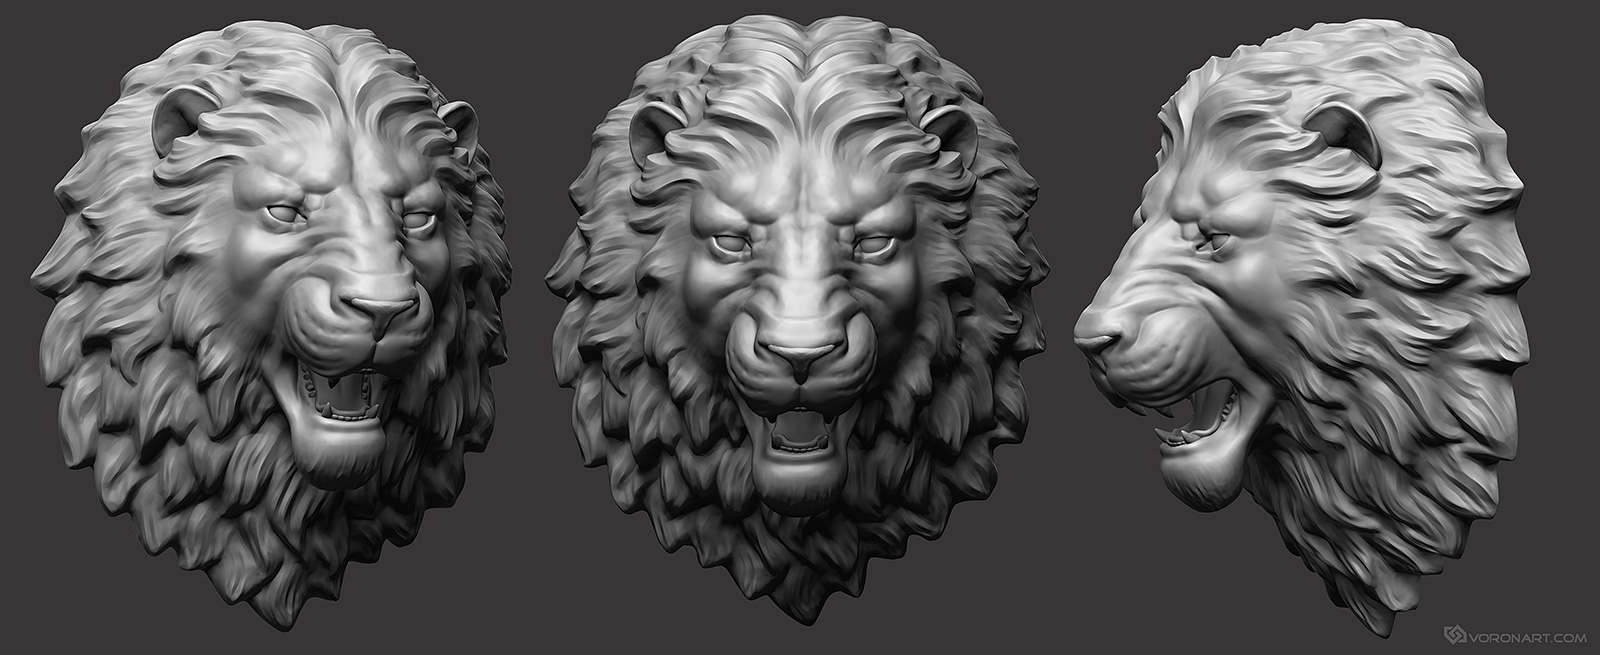 3d-lion-head-sculpture-01.jpg